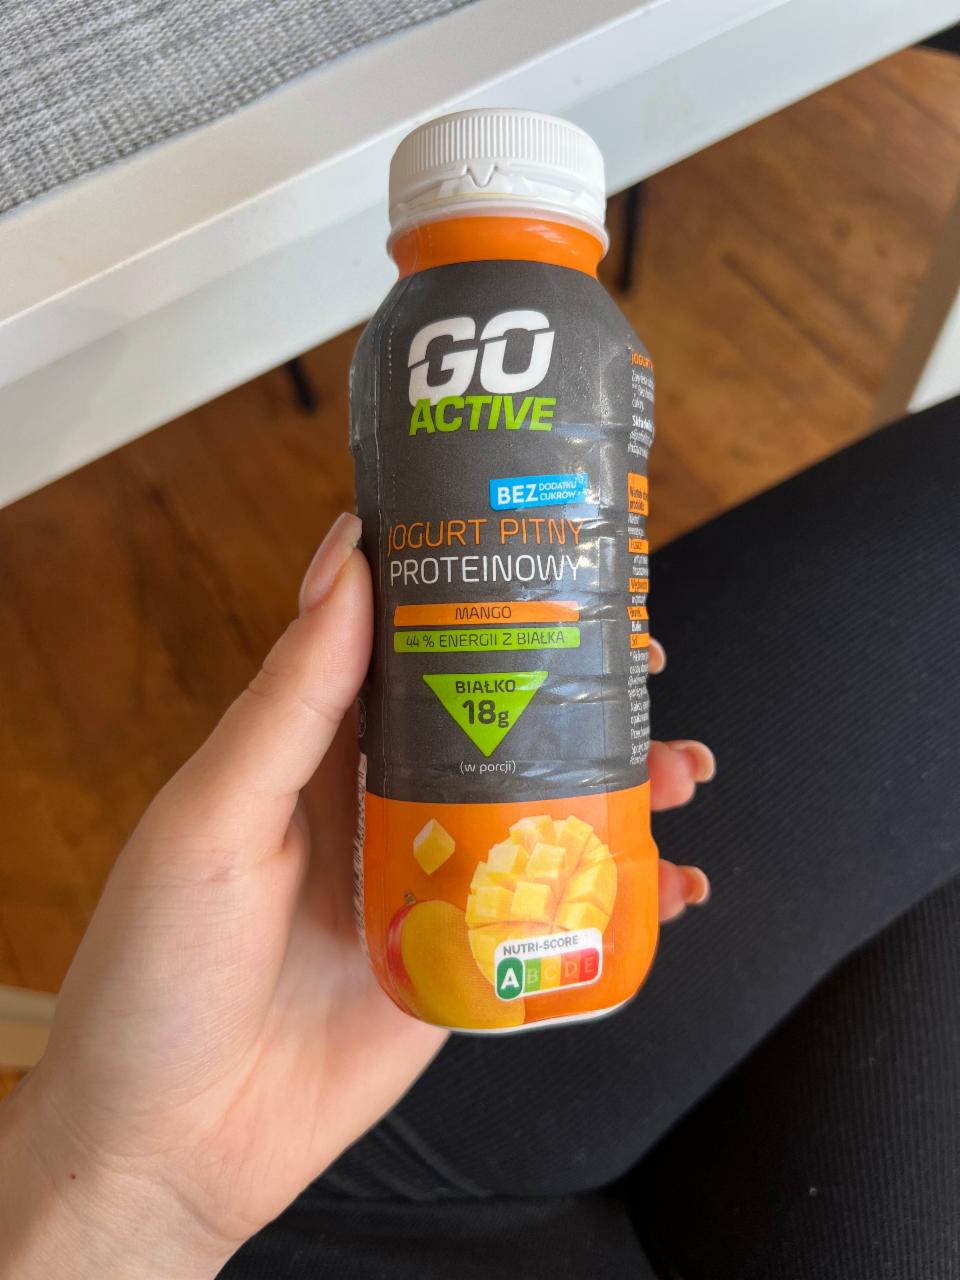 Фото - питьевой протеиновый йогурт манго Go Active